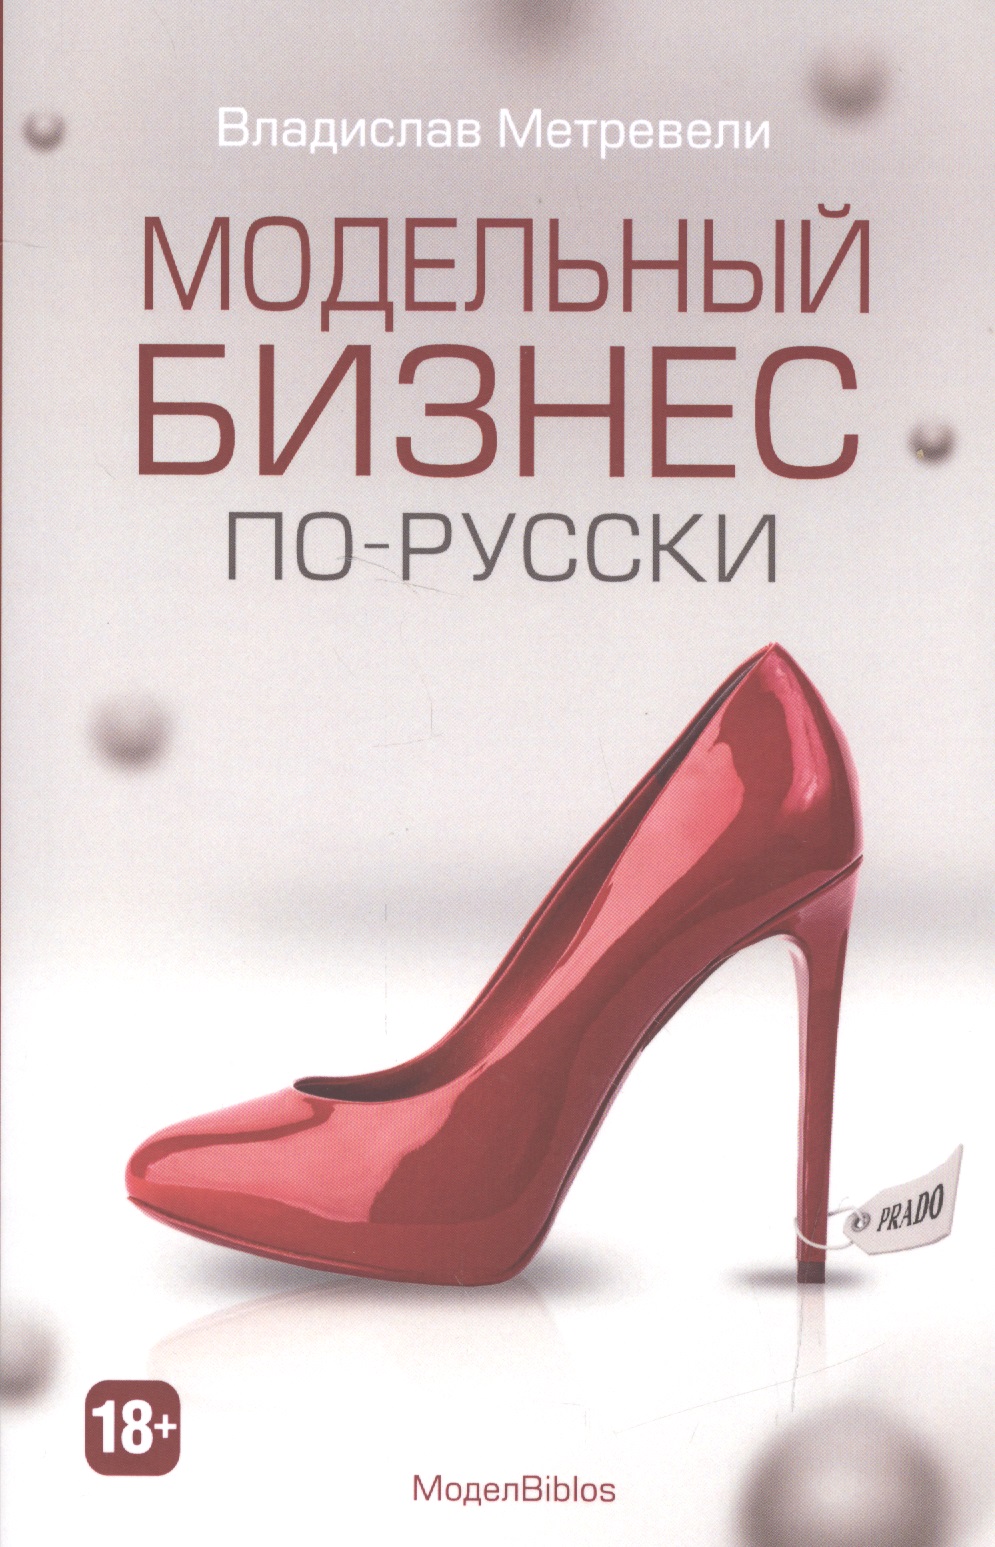 Модельный бизнес по-русски (МодельBiblos) московцев николай бизнес по русски бизнес по американски